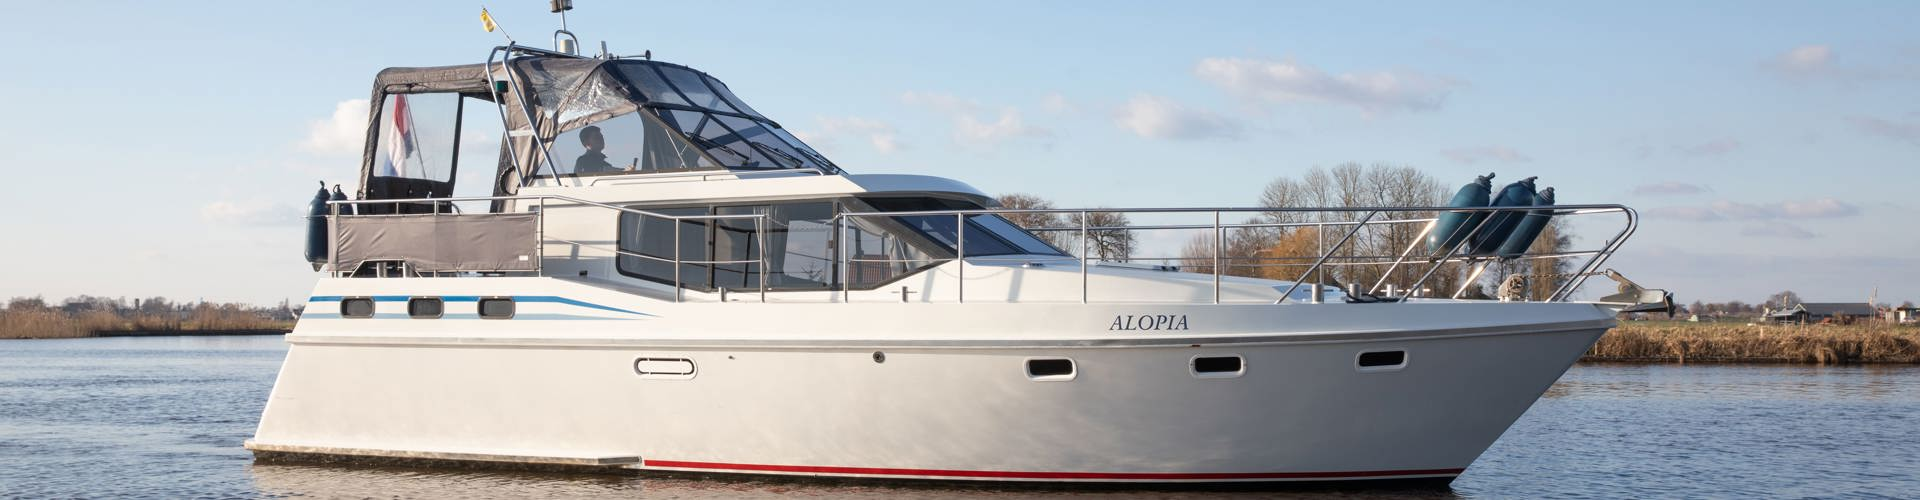 De Driesprong Yachtcharters Exterieur Motorjacht Alopia 15